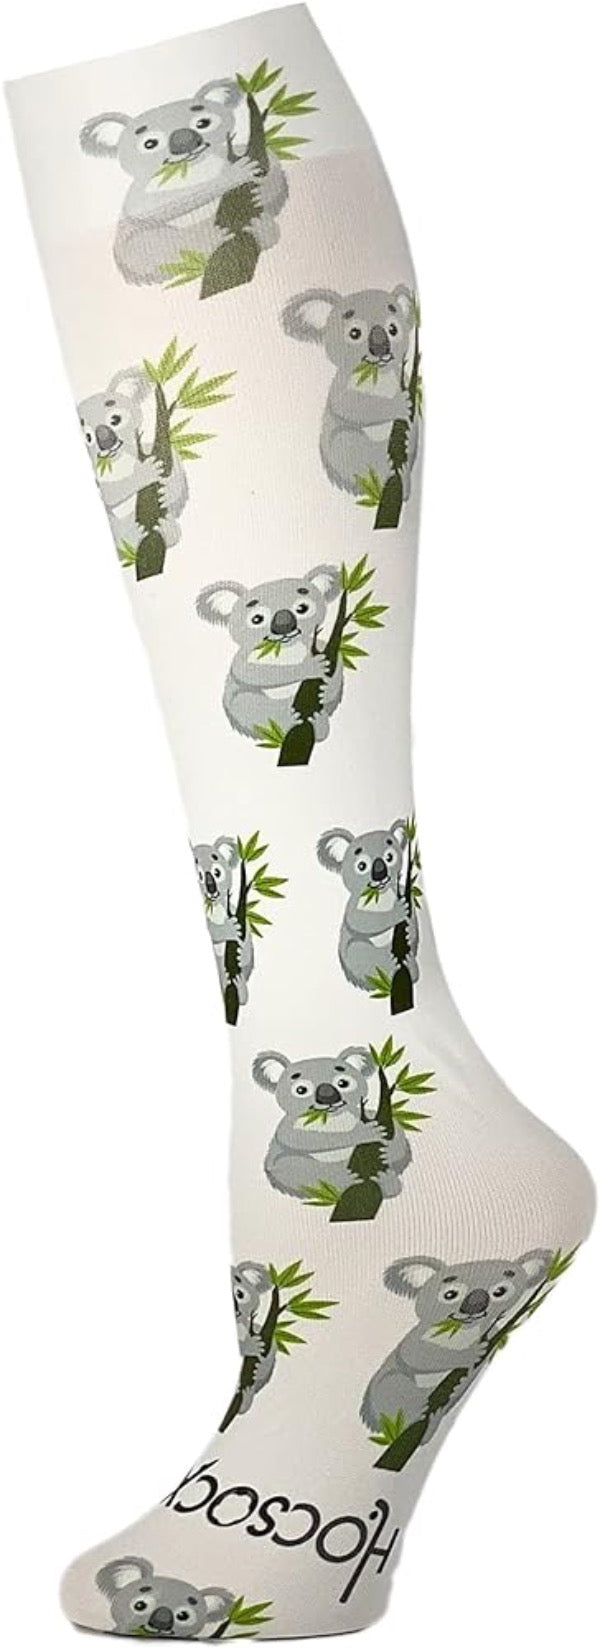 Hocsocx Koala Inner Socks